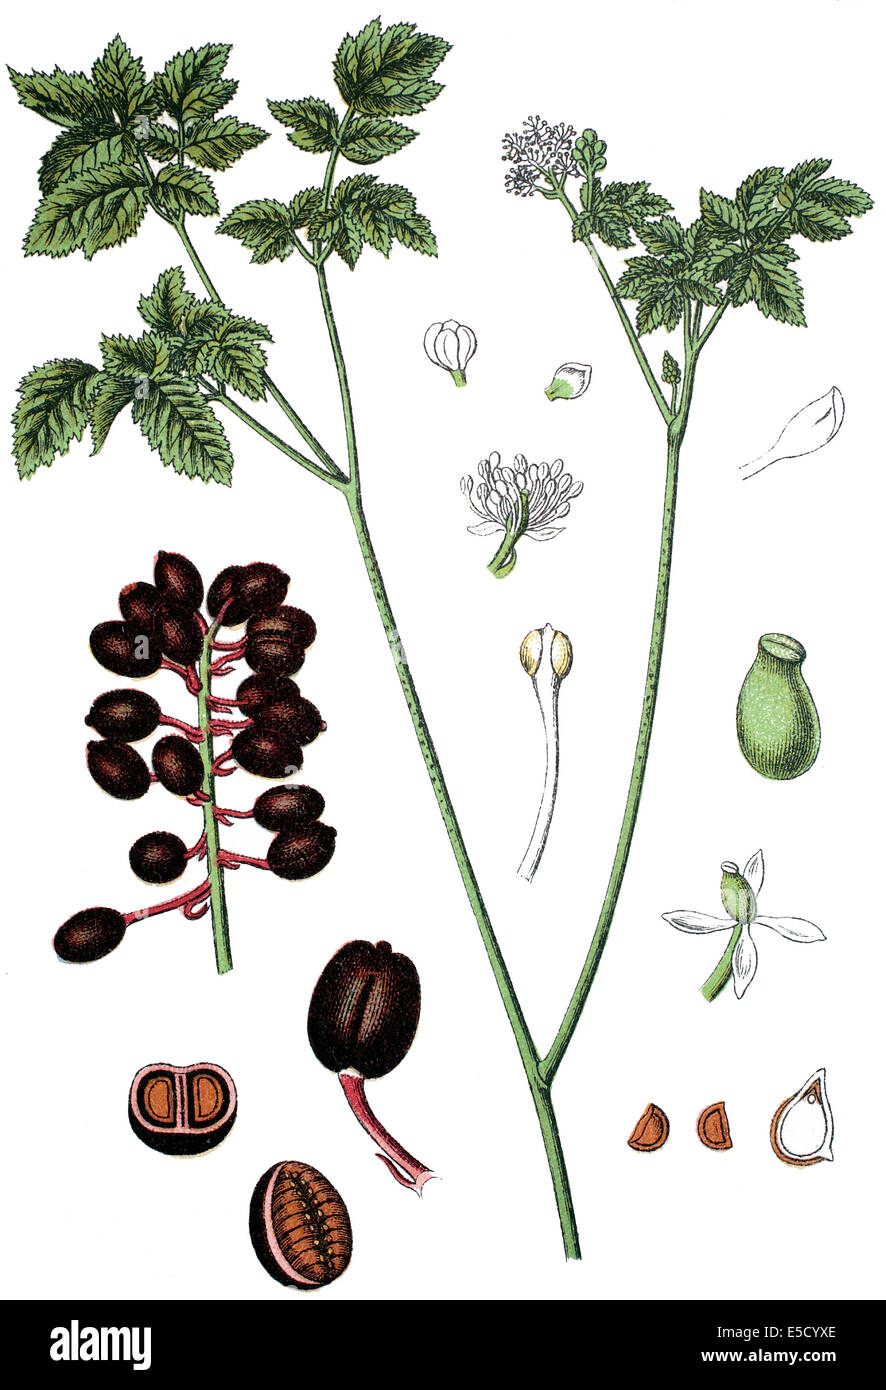 Baneberry, Eurasian Baneberry, or Herb Christopher, Actaea spicata L. Stock Photo